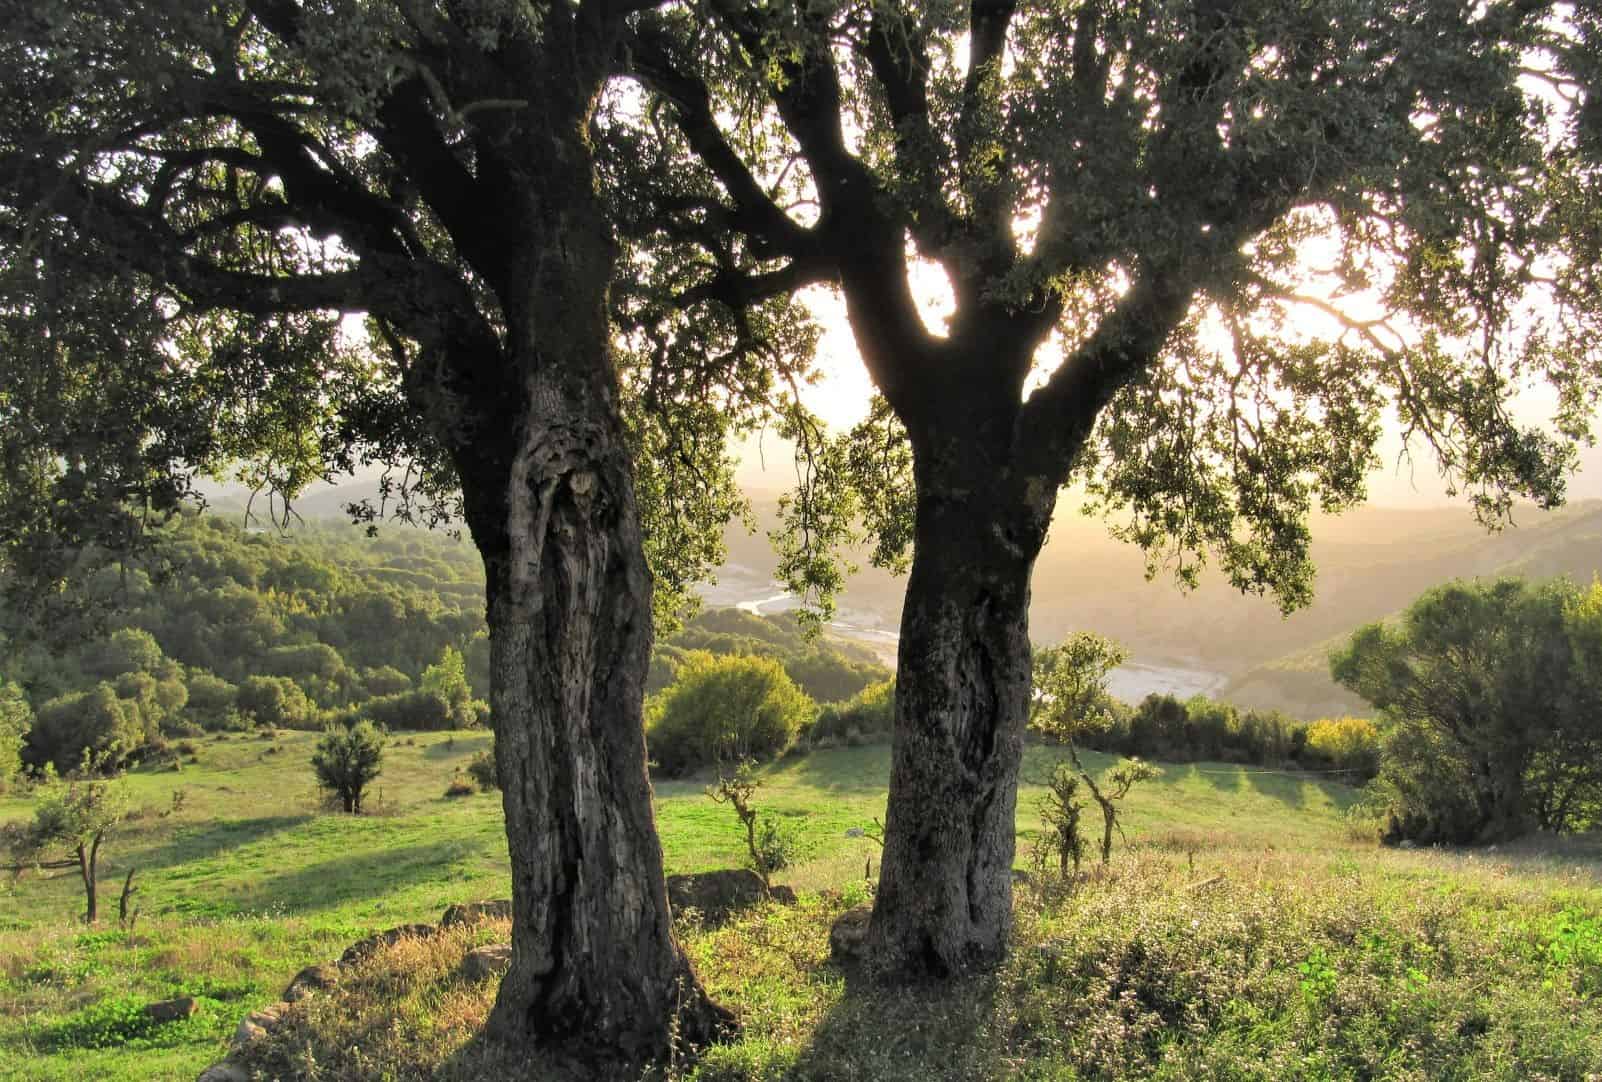 ID 83401969 © Sterphotography | Dreamstime.com Two kermes oak in front of the sun in Greece